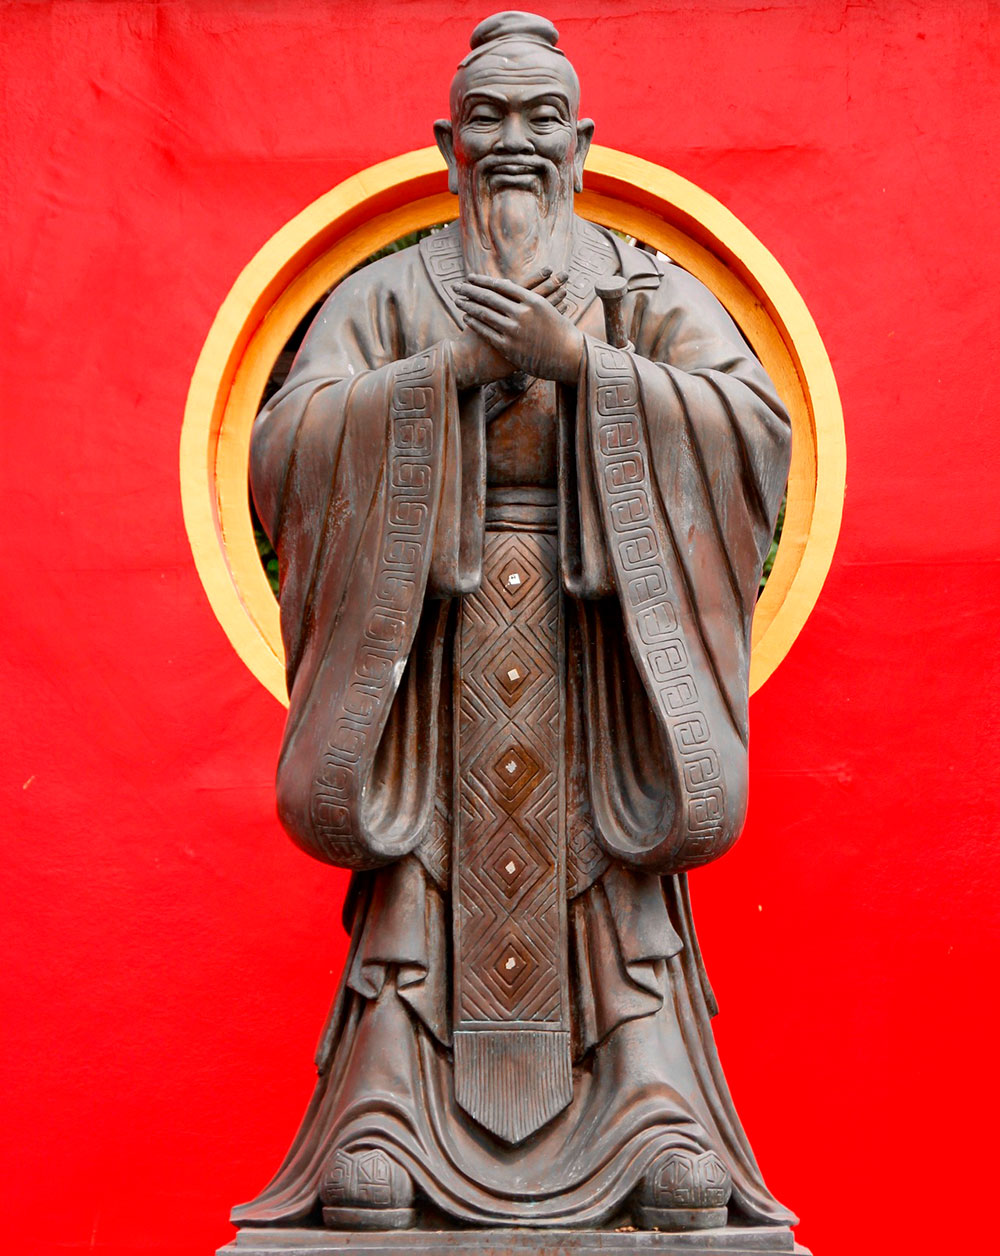 Escultura de Confucio en el templo dedicado al filósofo en Beijing.